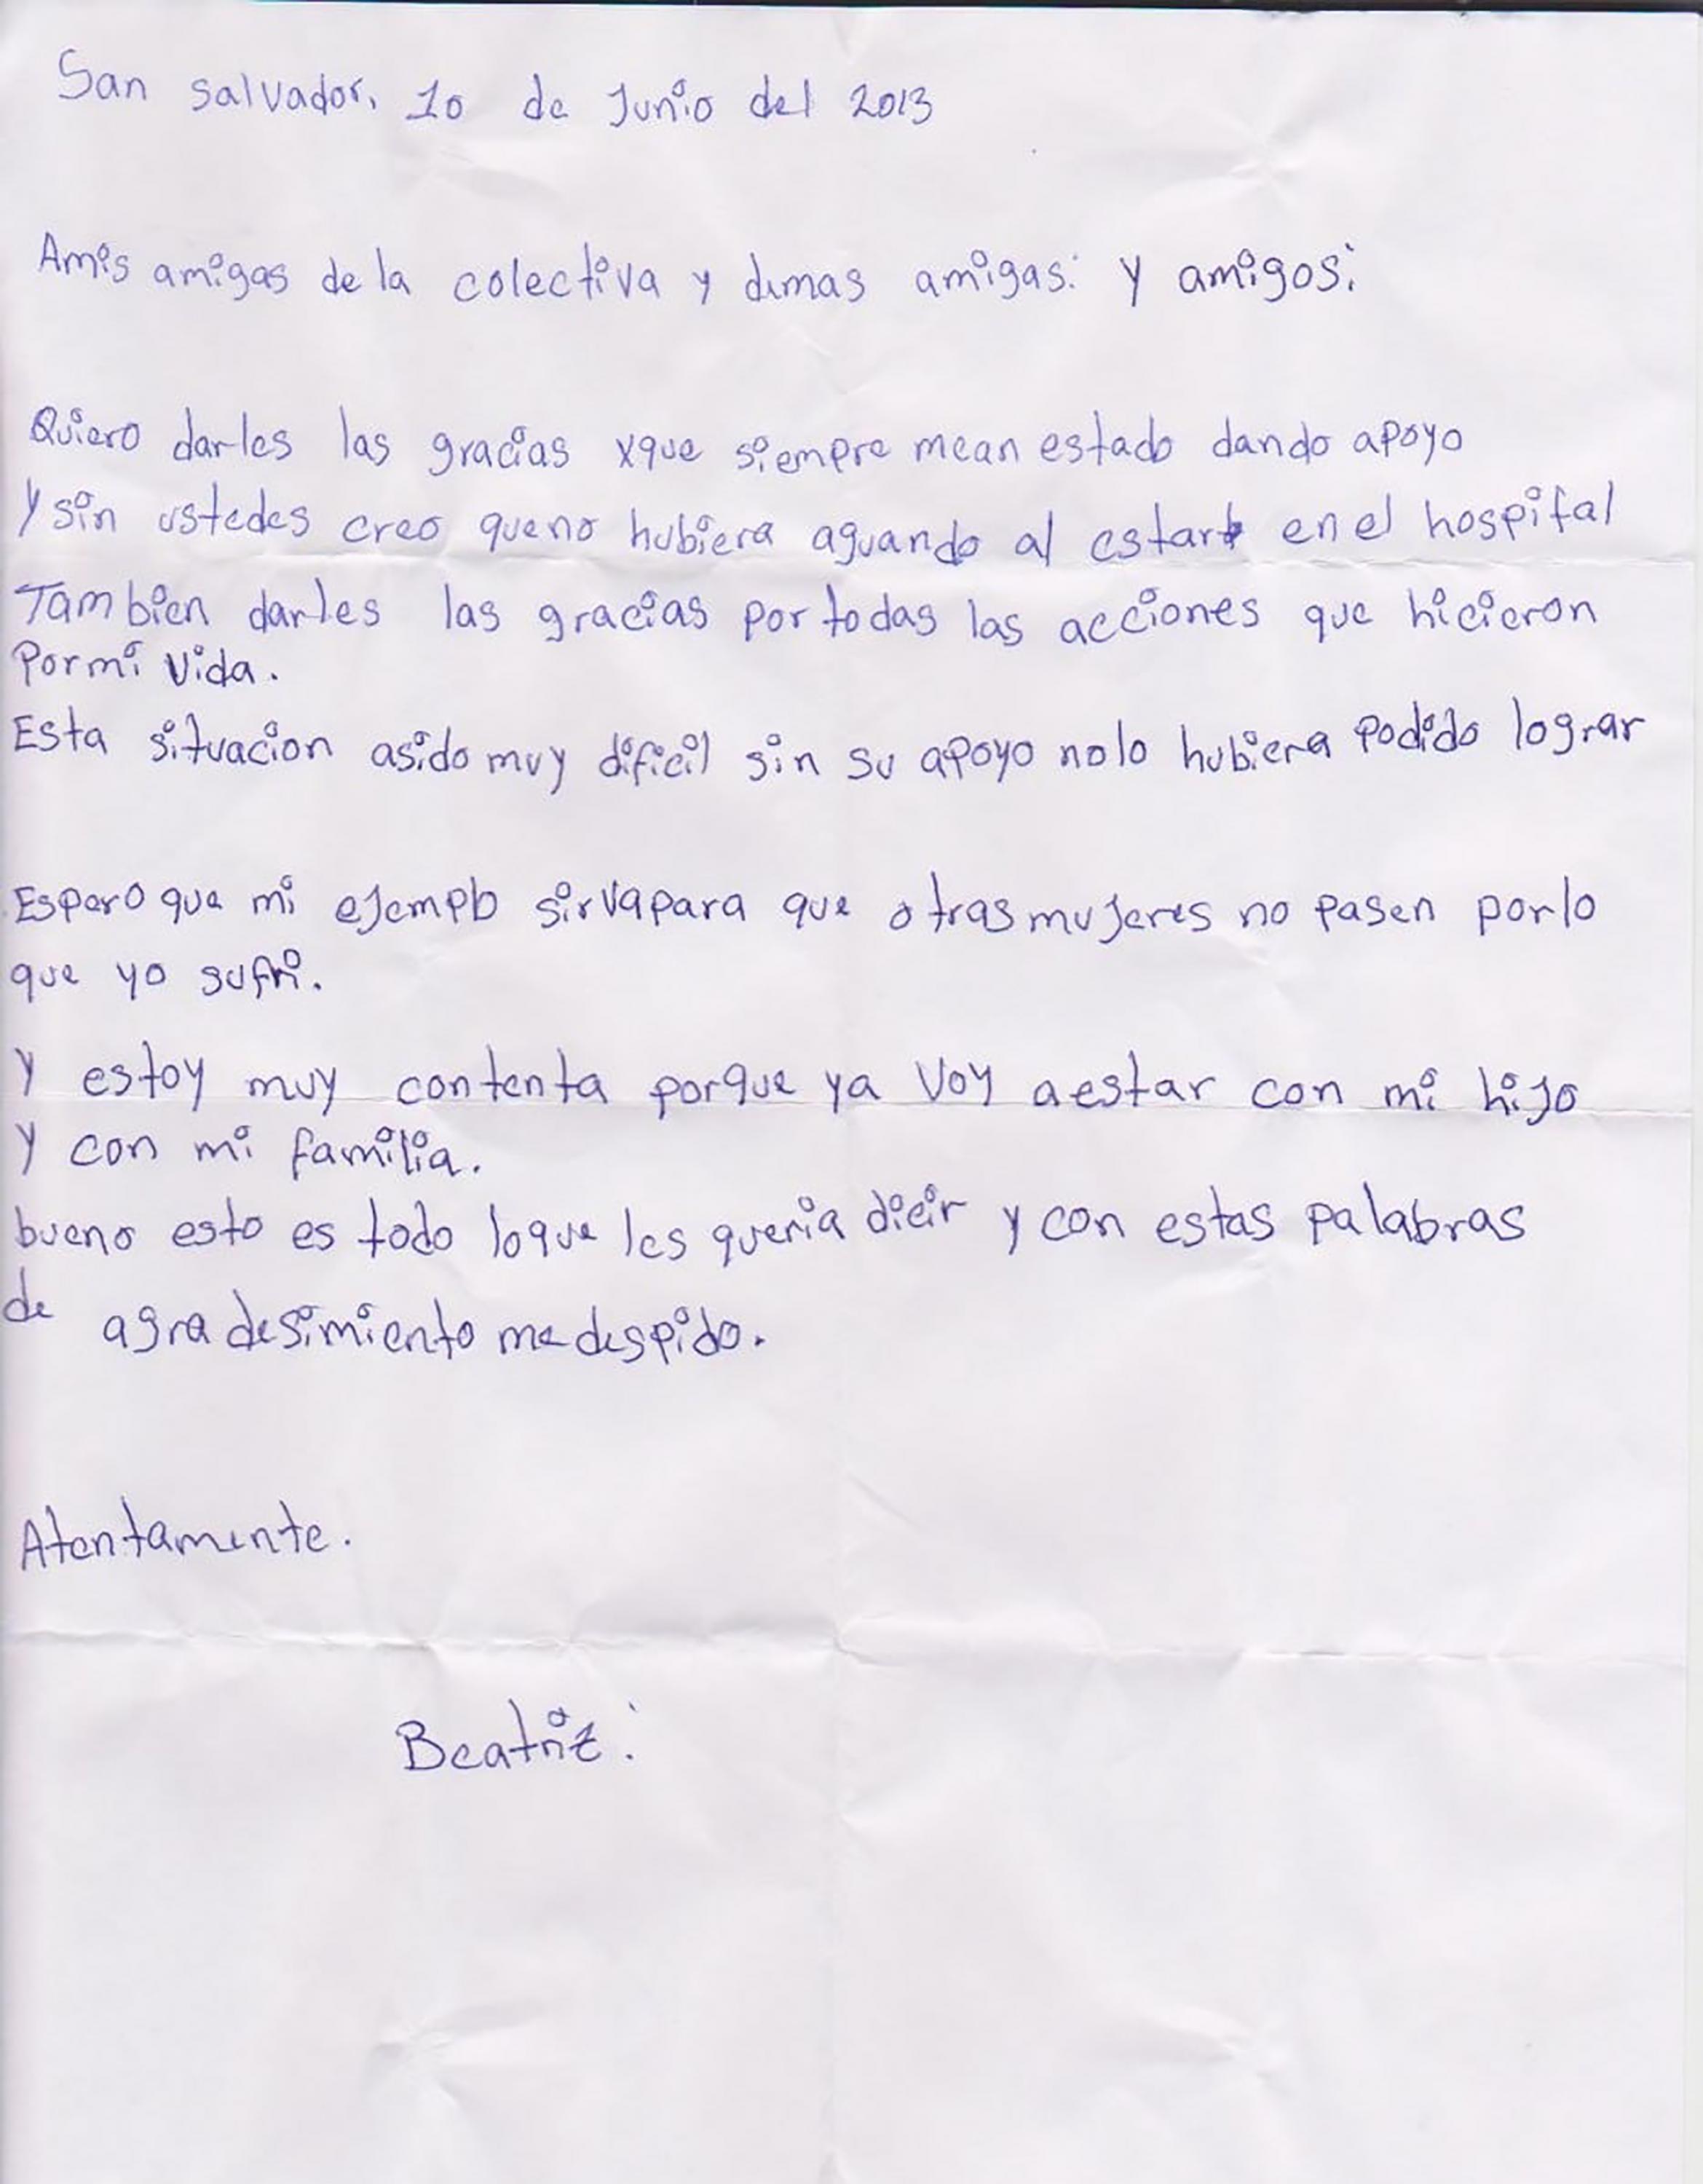 Carta enviada por Beatriz el 10 de junio de 2013 a las organizaciones de derechos Humanos que la acompañaron durante su hospitalización. 